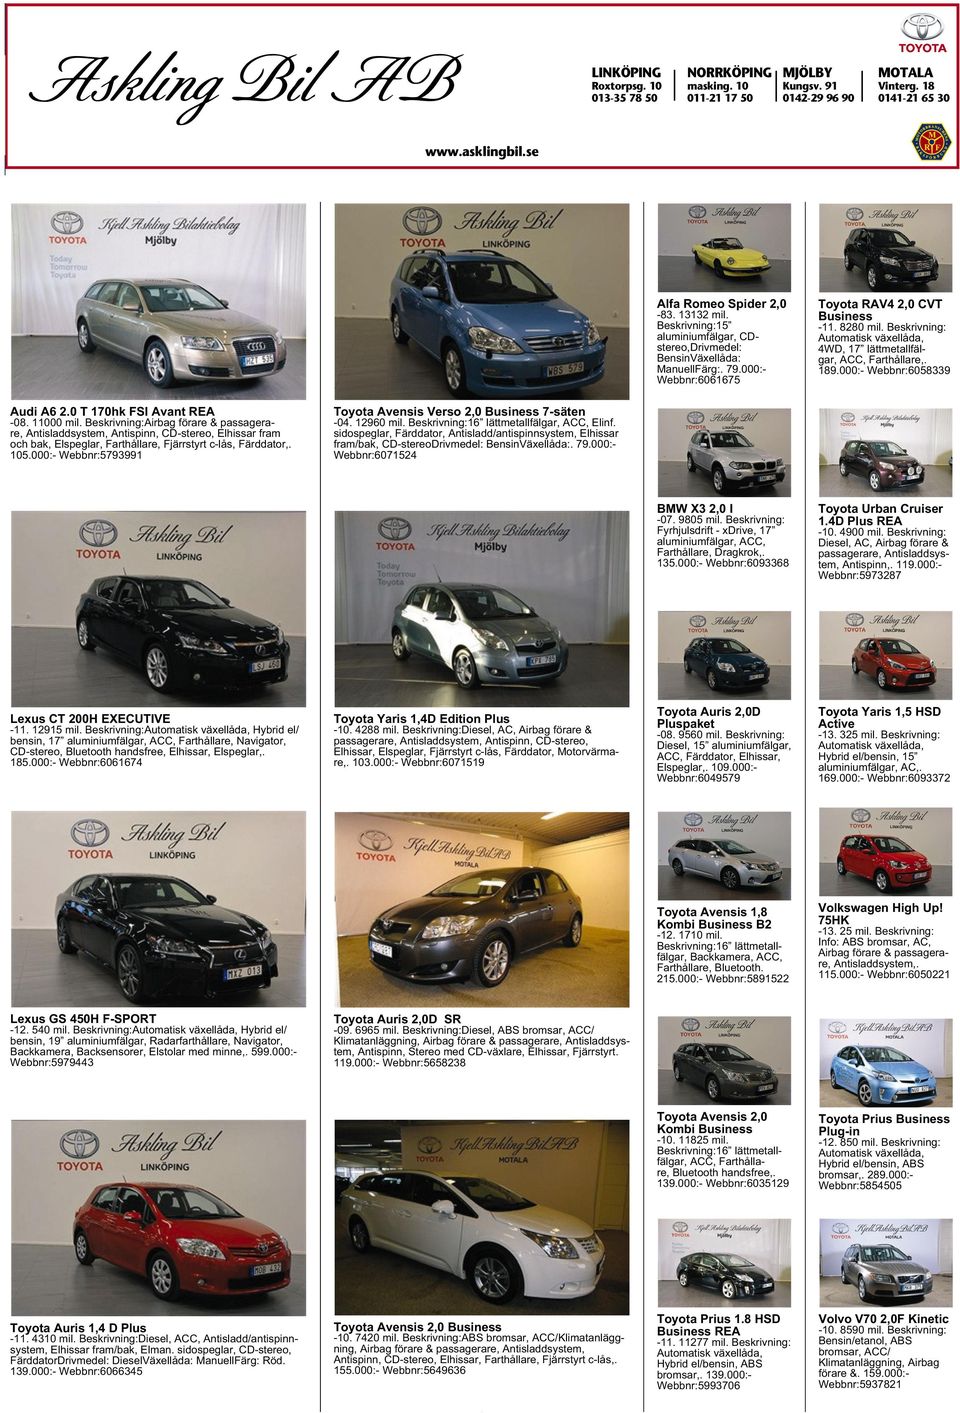 Beskrivning: 4WD, 17 lättmetallfälgar, ACC, Farthållare,. 189.000:- Webbnr:6058339 Audi A6 2.0 T170hk FSI Avant REA -08. 11000 mil.